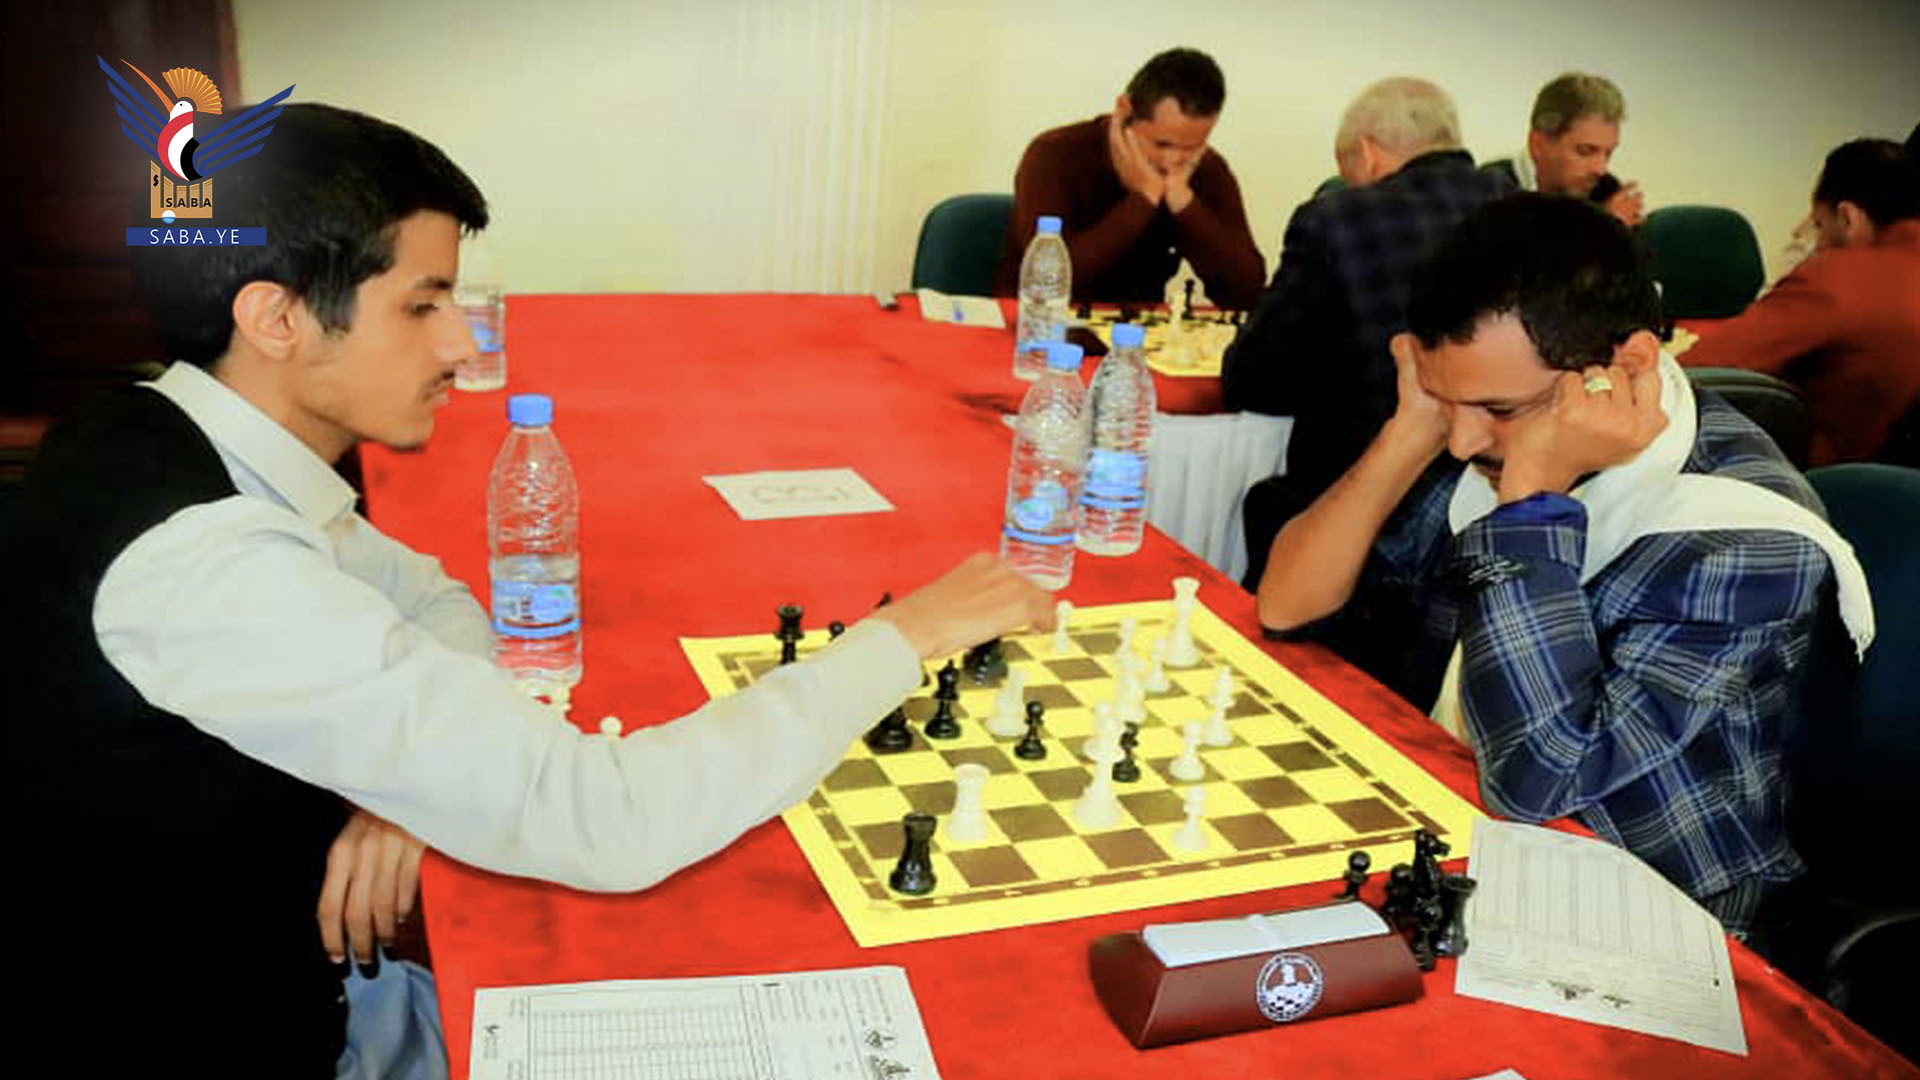 البعداني والصبيحي والزنداني صراع حسم لقب بطولة الشطرنج الفردية بصنعاء